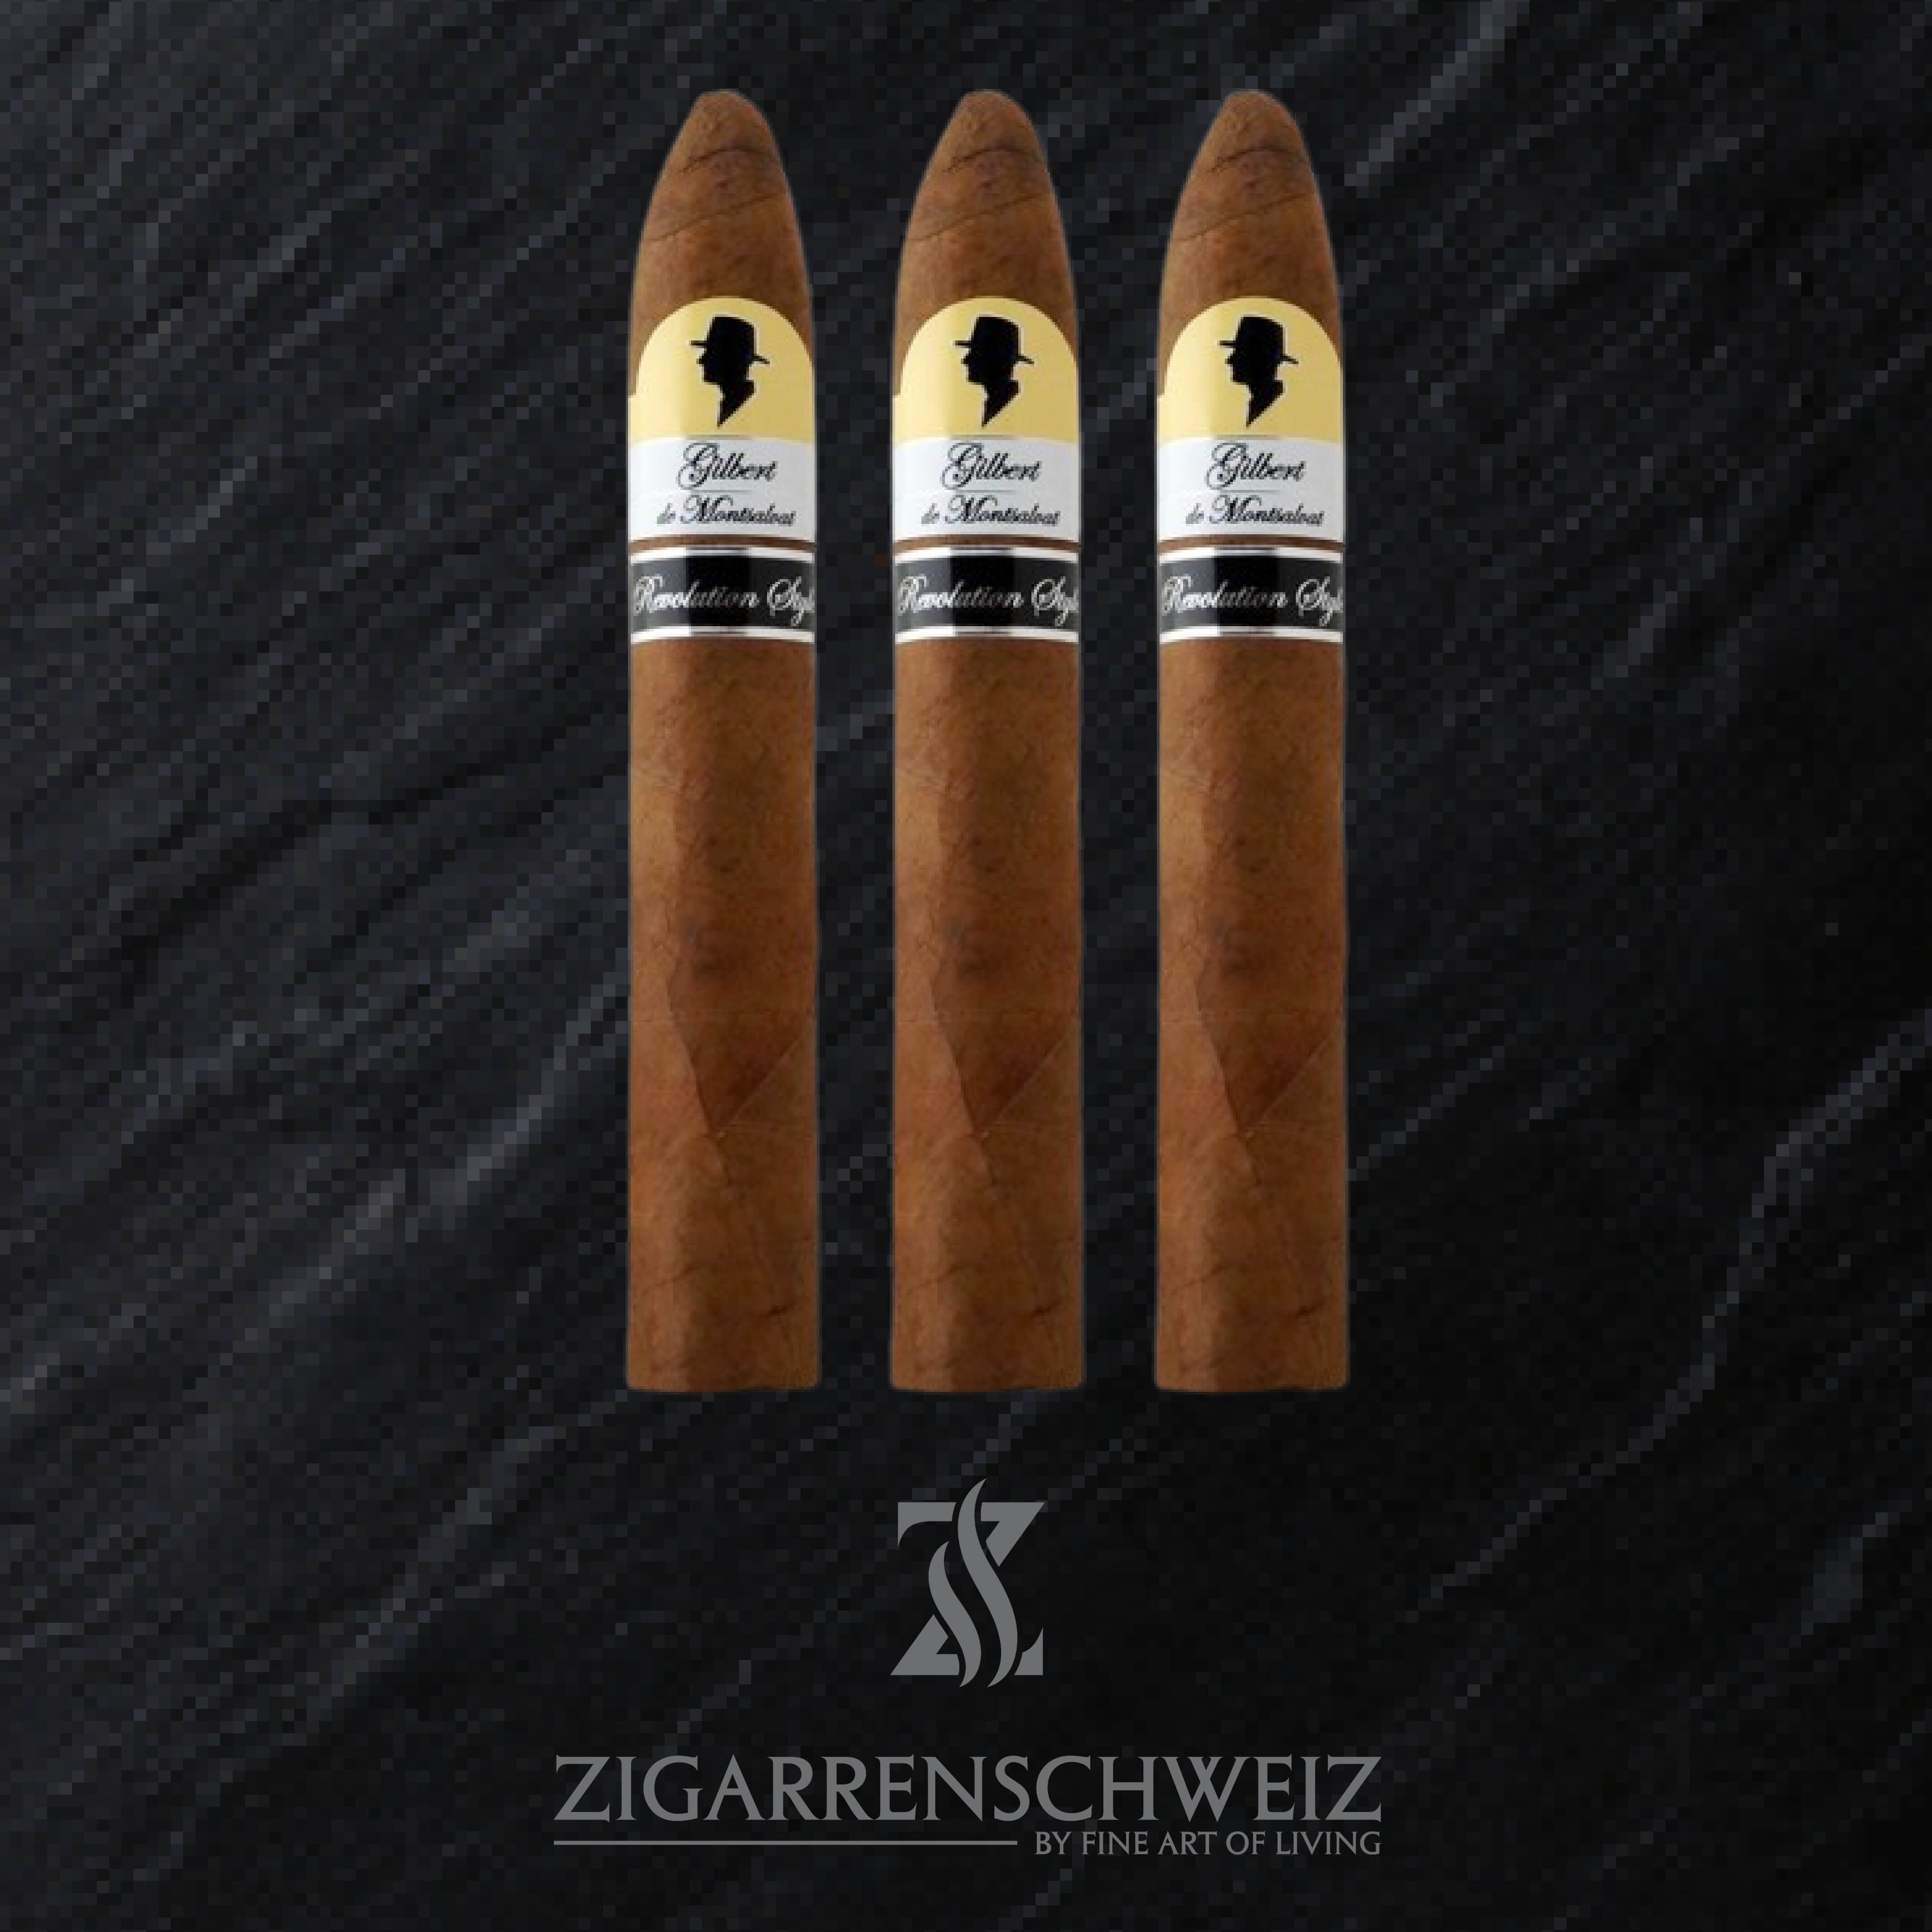 Gilbert de Montsalvat Revolution Style Belicolissimo Zigarren 3er Etui von Zigarrenschweiz